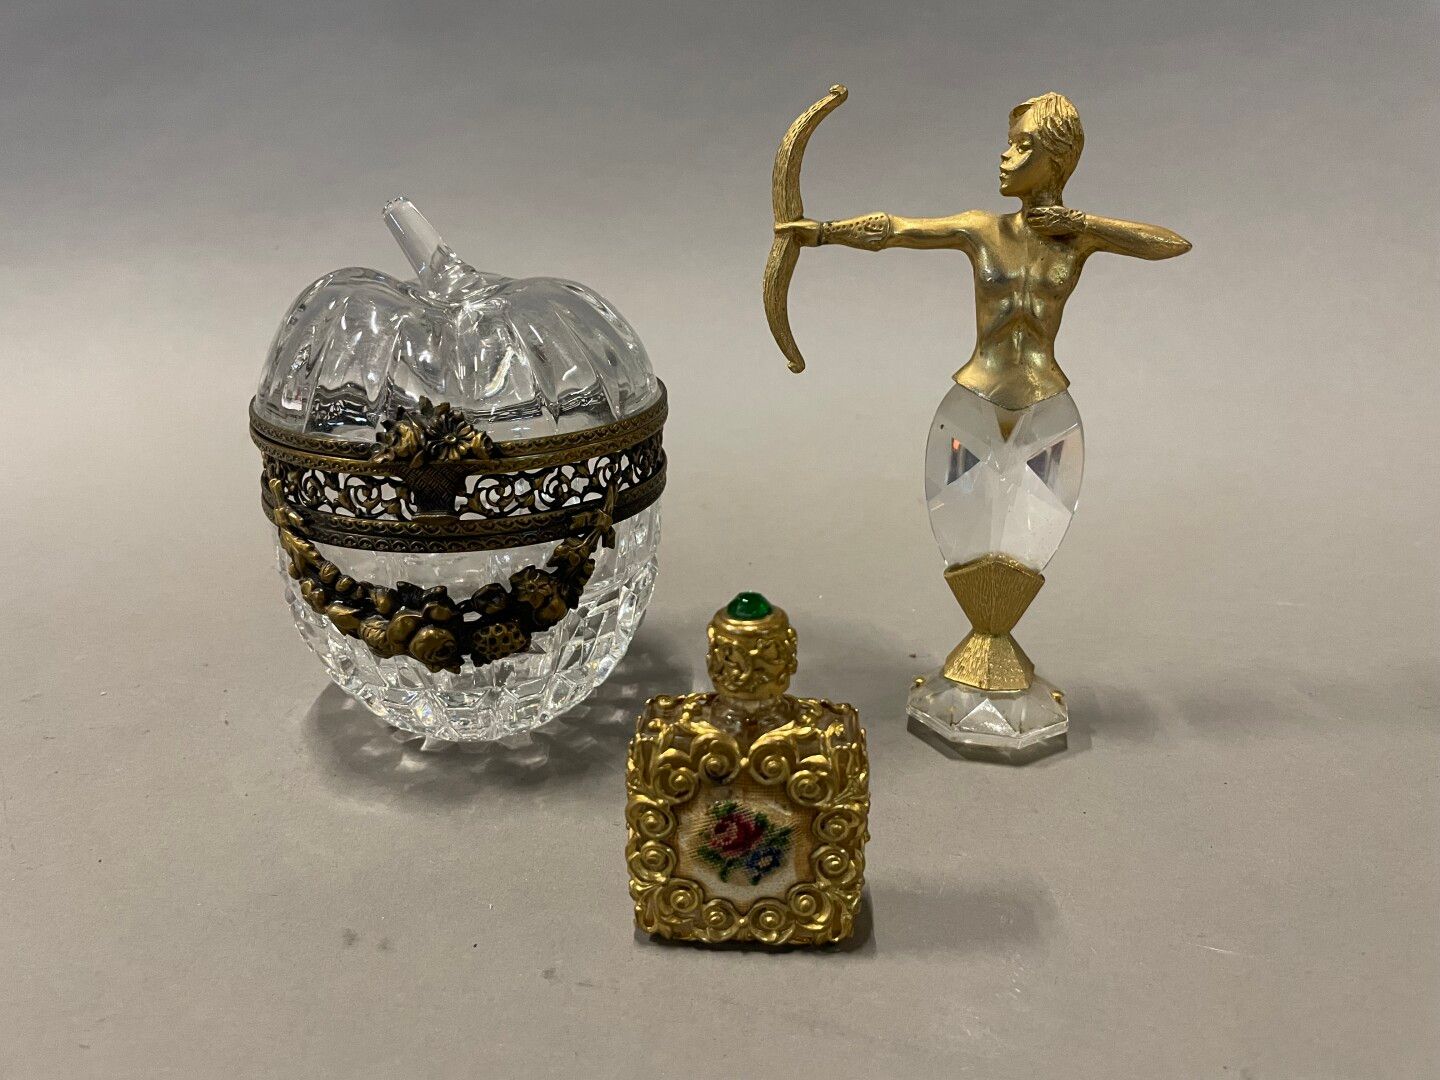 Null 很多展示品:

苹果形的水晶盒，镶嵌着镀金和凹凸不平的青铜（14厘米）。

镶嵌在鎏金金属网中的香水瓶（6.5厘米）

水晶和鎏金金属拱门（15厘米）